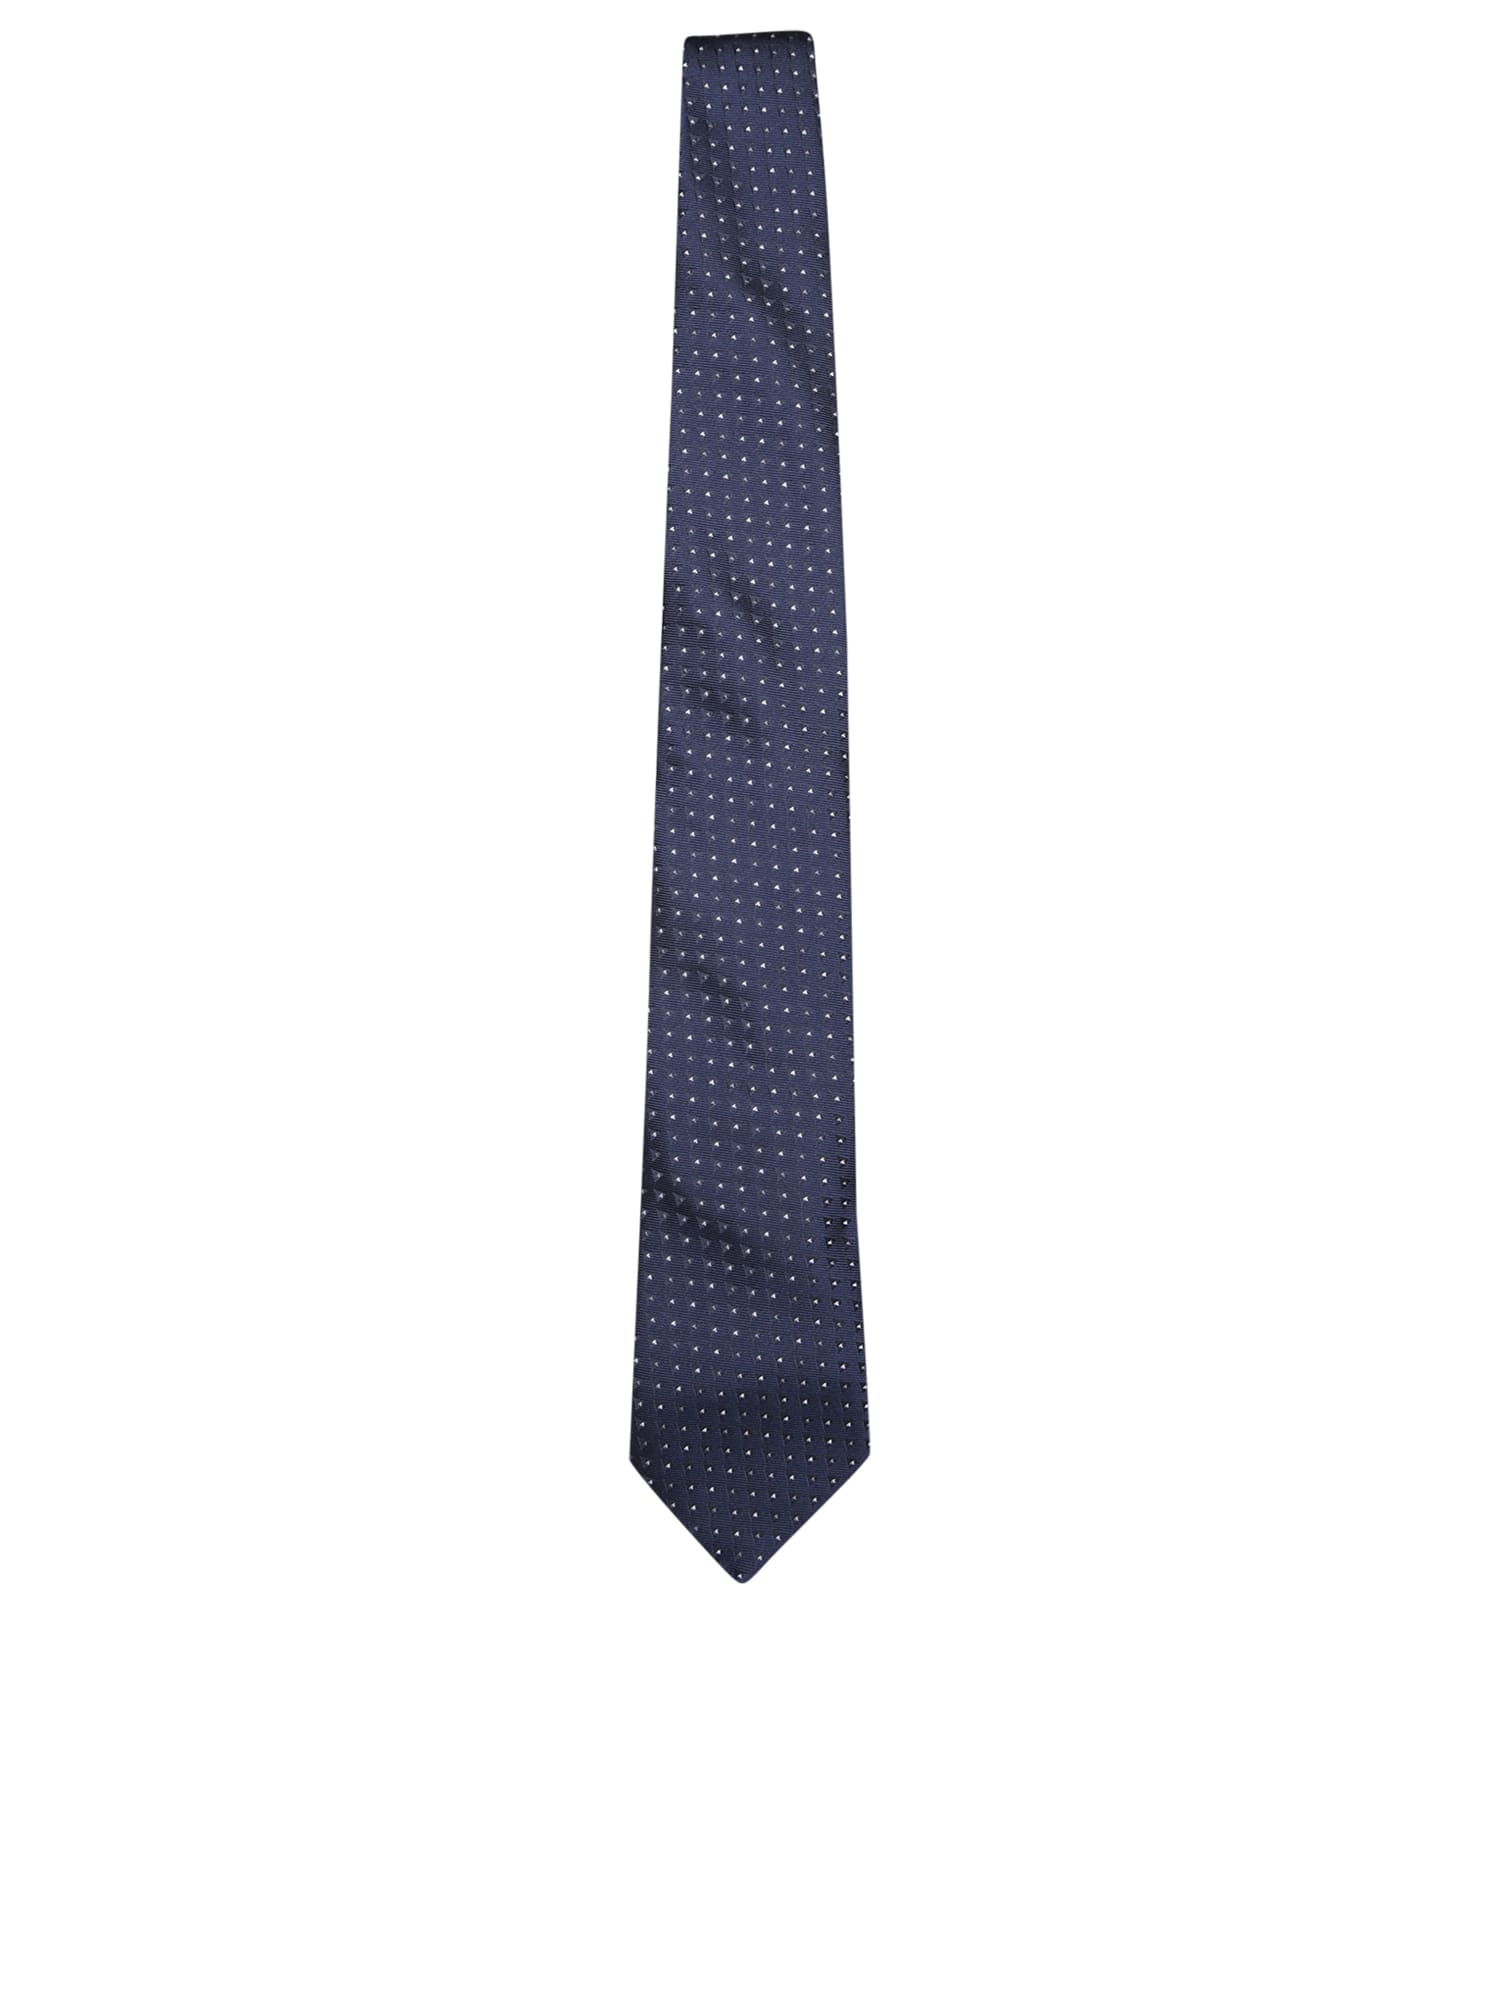 Dot-printed Tie